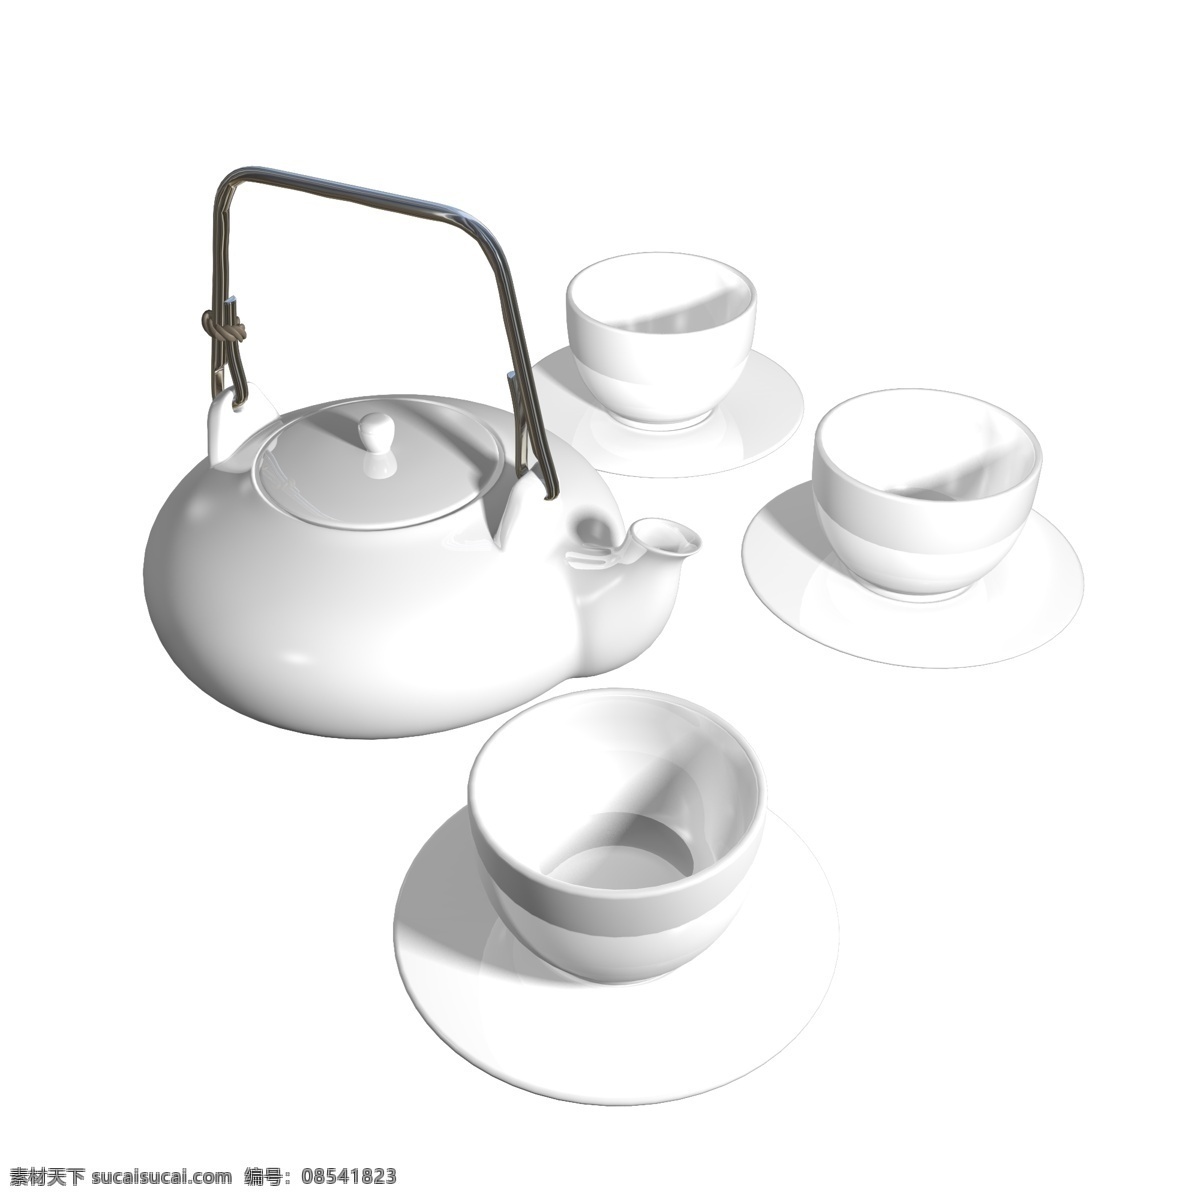 功夫茶 白瓷 茶具 组合 休闲茶具 茶文化 中国文化 瓷器茶具 紫砂壶 功夫茶套餐 茶台 功夫 茶 茶具组合